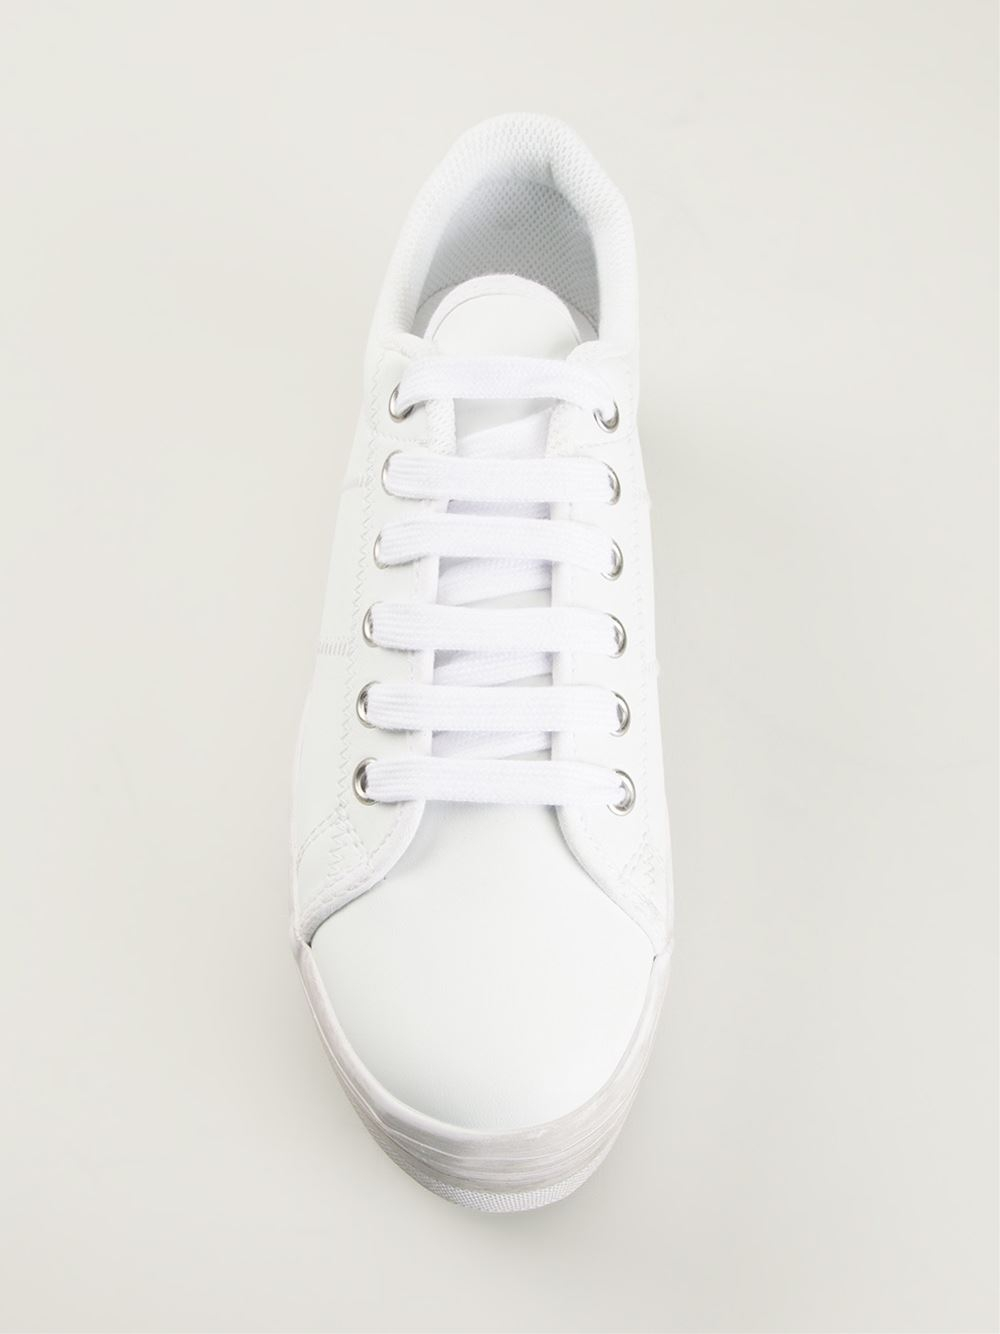 deur Stadion Ladder Jeffrey Campbell 'Zomg' Platform Sneakers in White | Lyst